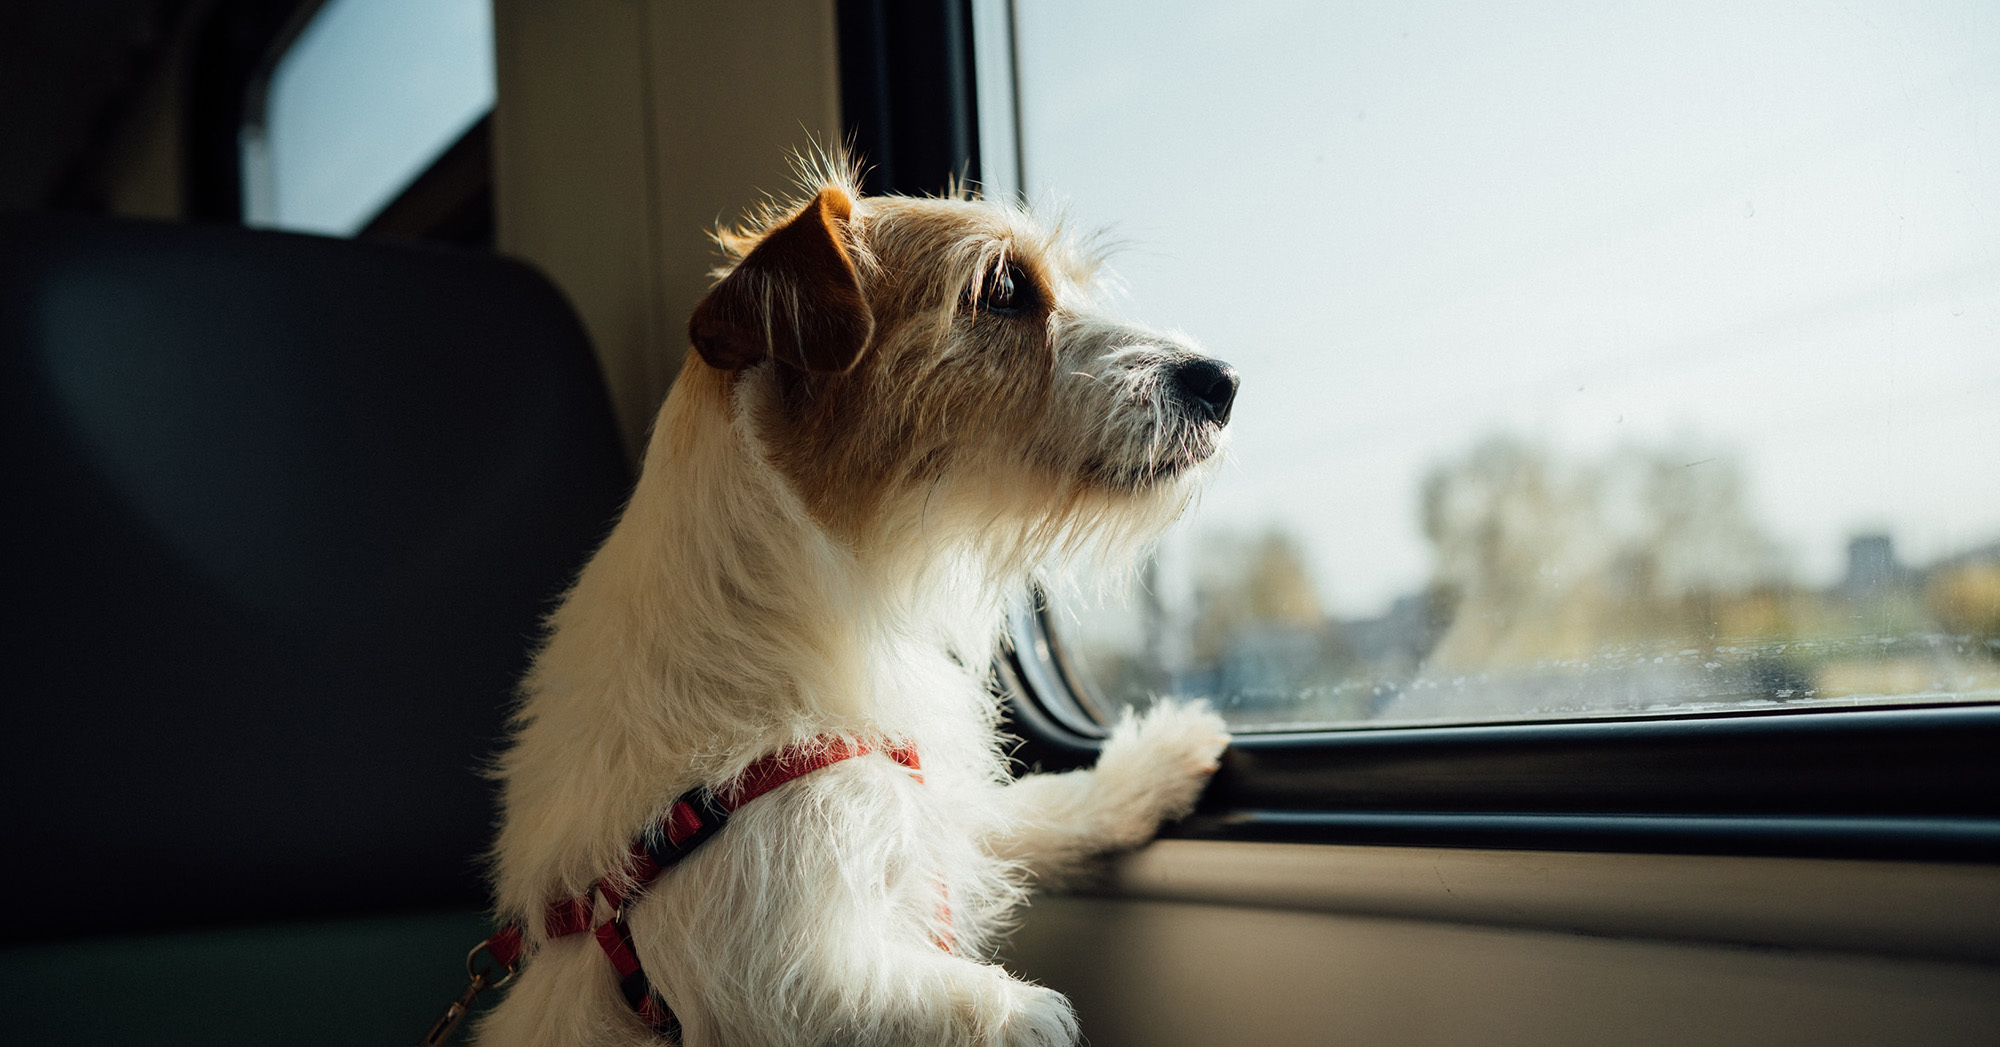 Szeptember 15-ig nemcsak a kicsi, hanem a közepes és nagytestű kutyák is ingyen utazhatnak a vonatokon.